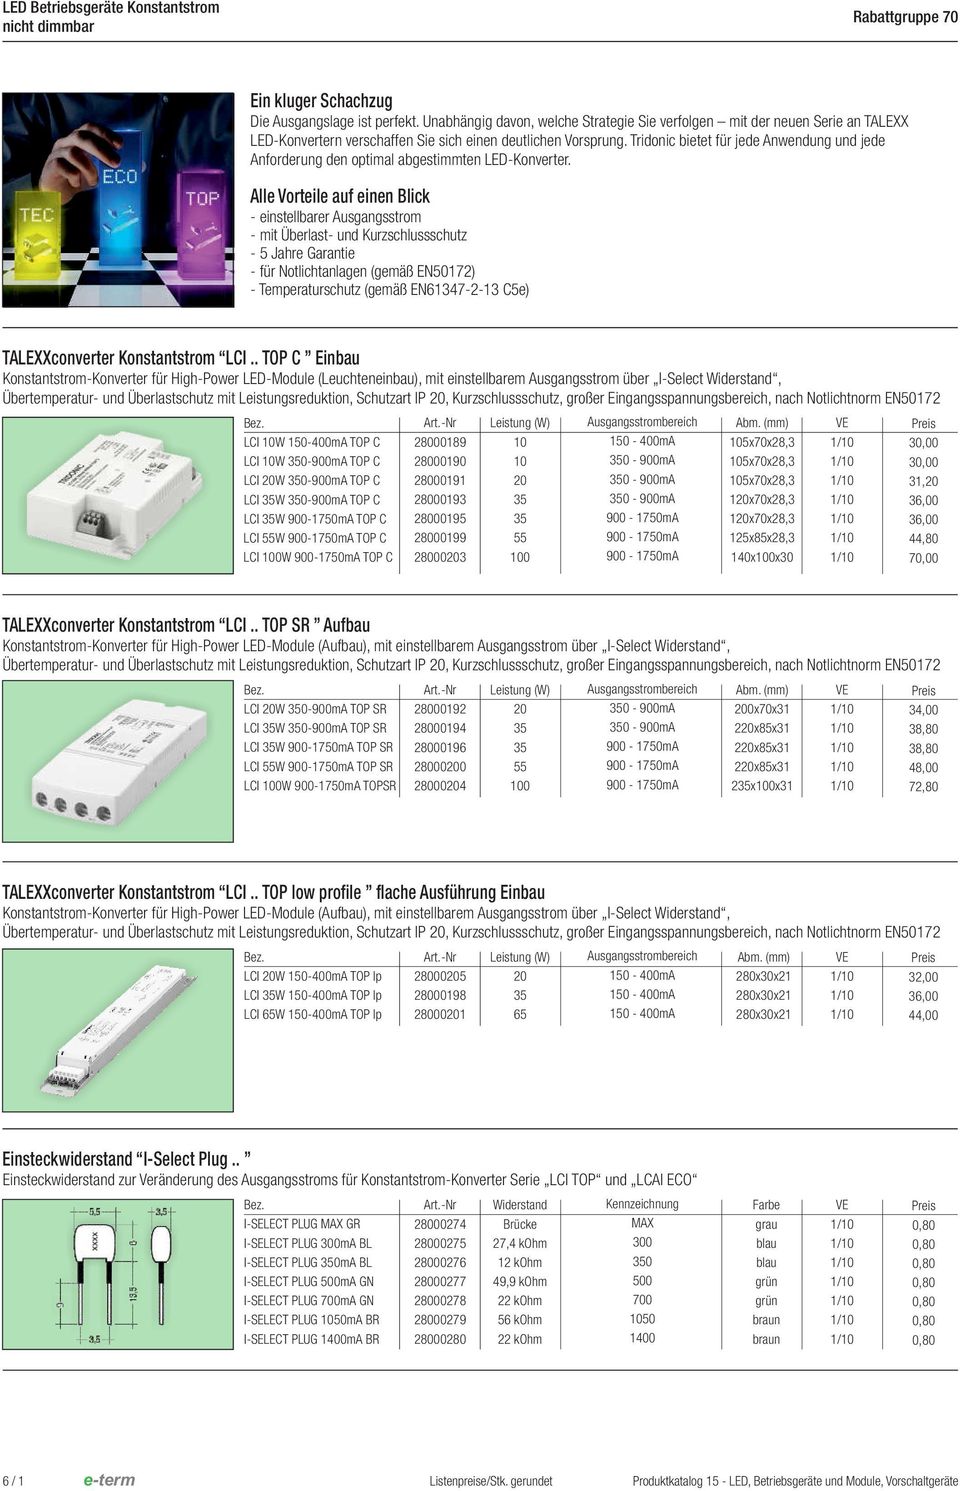 Tridonic bietet für jede Anwendung und jede Anforderung den optimal abgestimmten LEDKonverter.